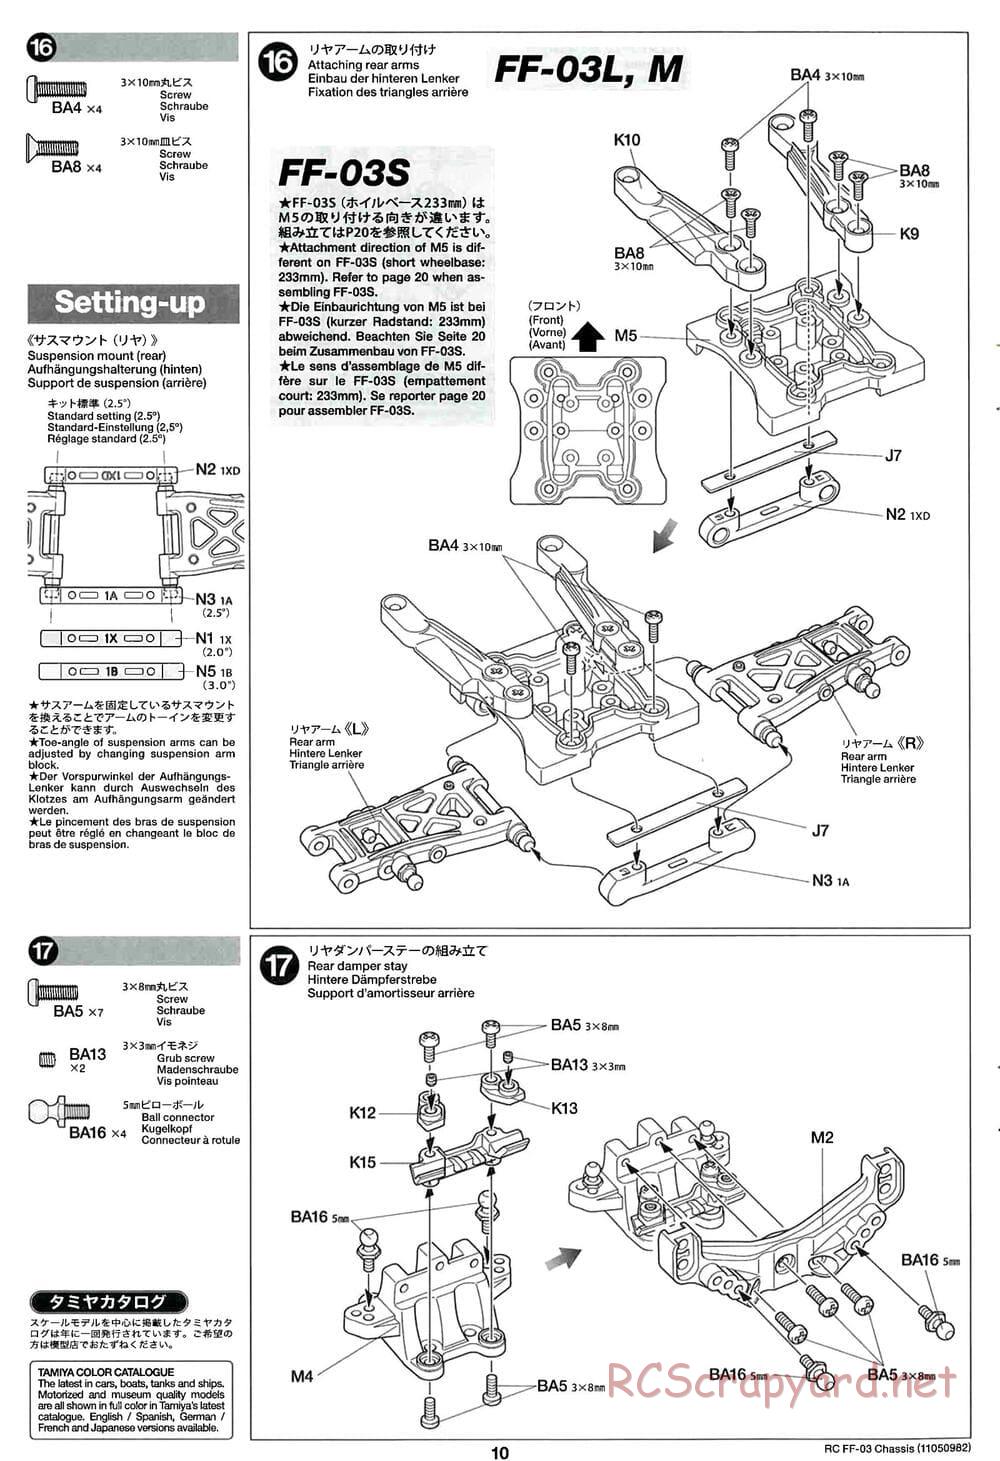 Tamiya - Honda CR-Z - FF-03 Chassis - Manual - Page 10